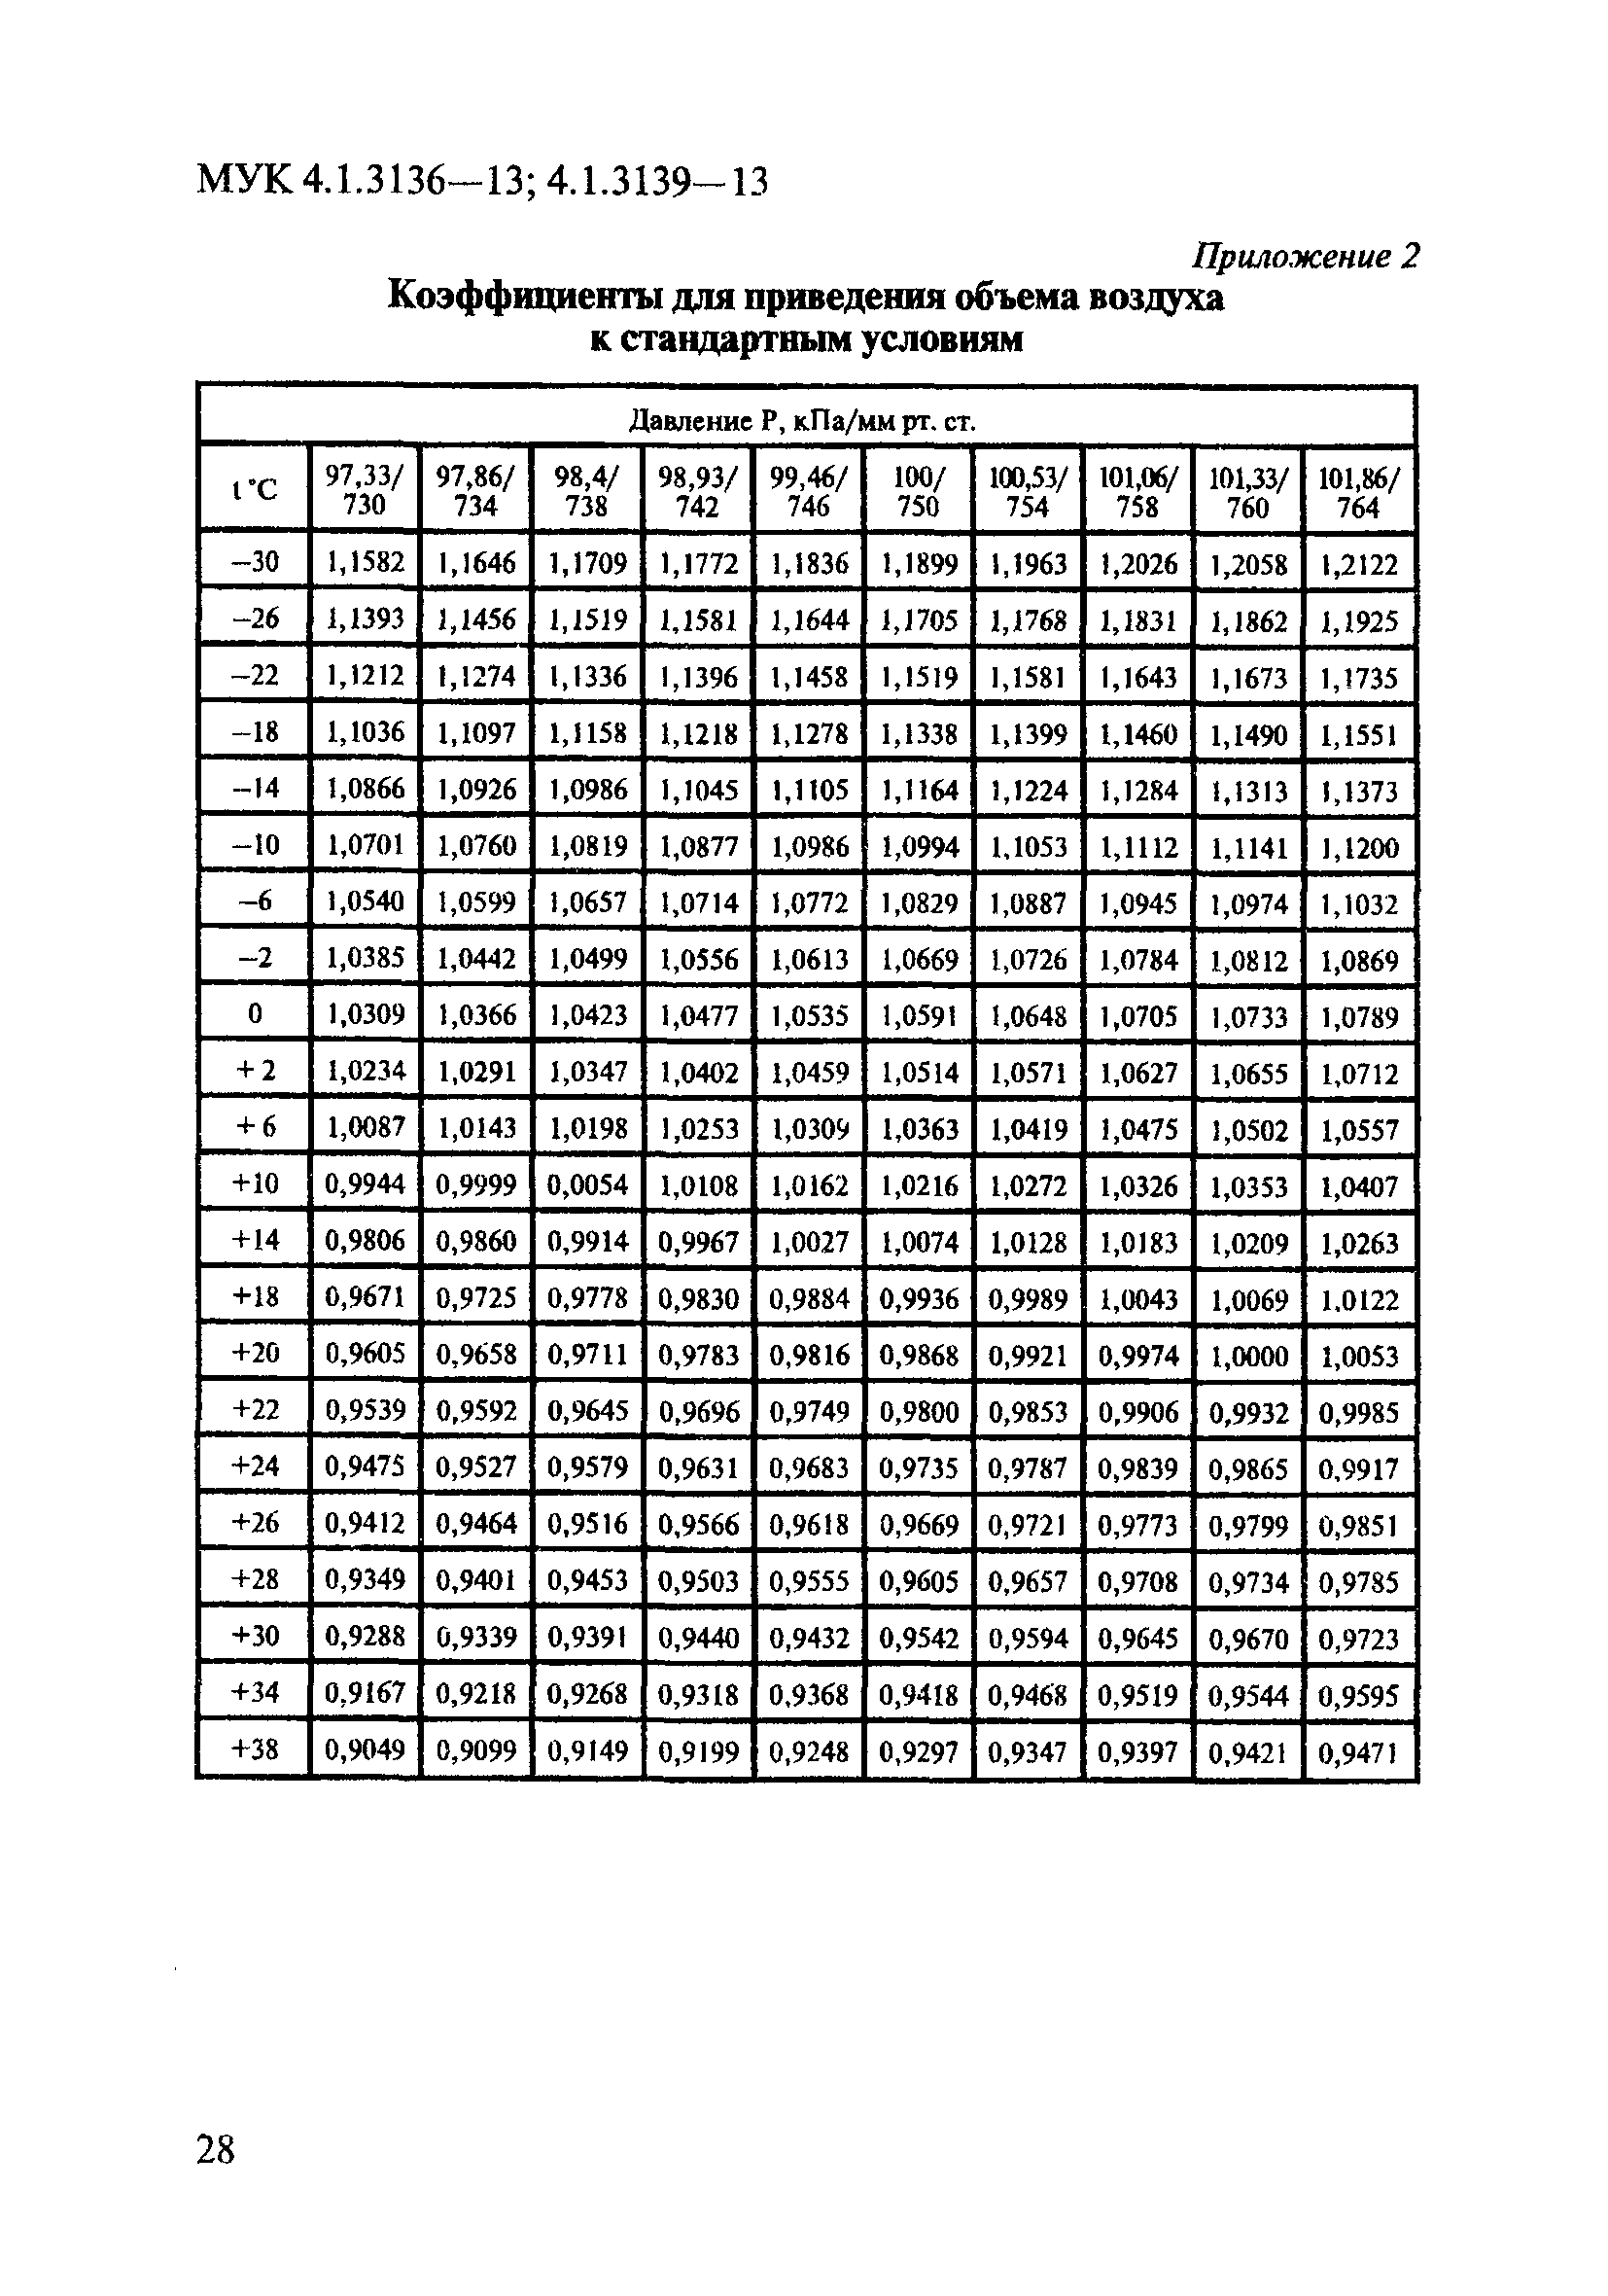 МУК 4.1.3139-13